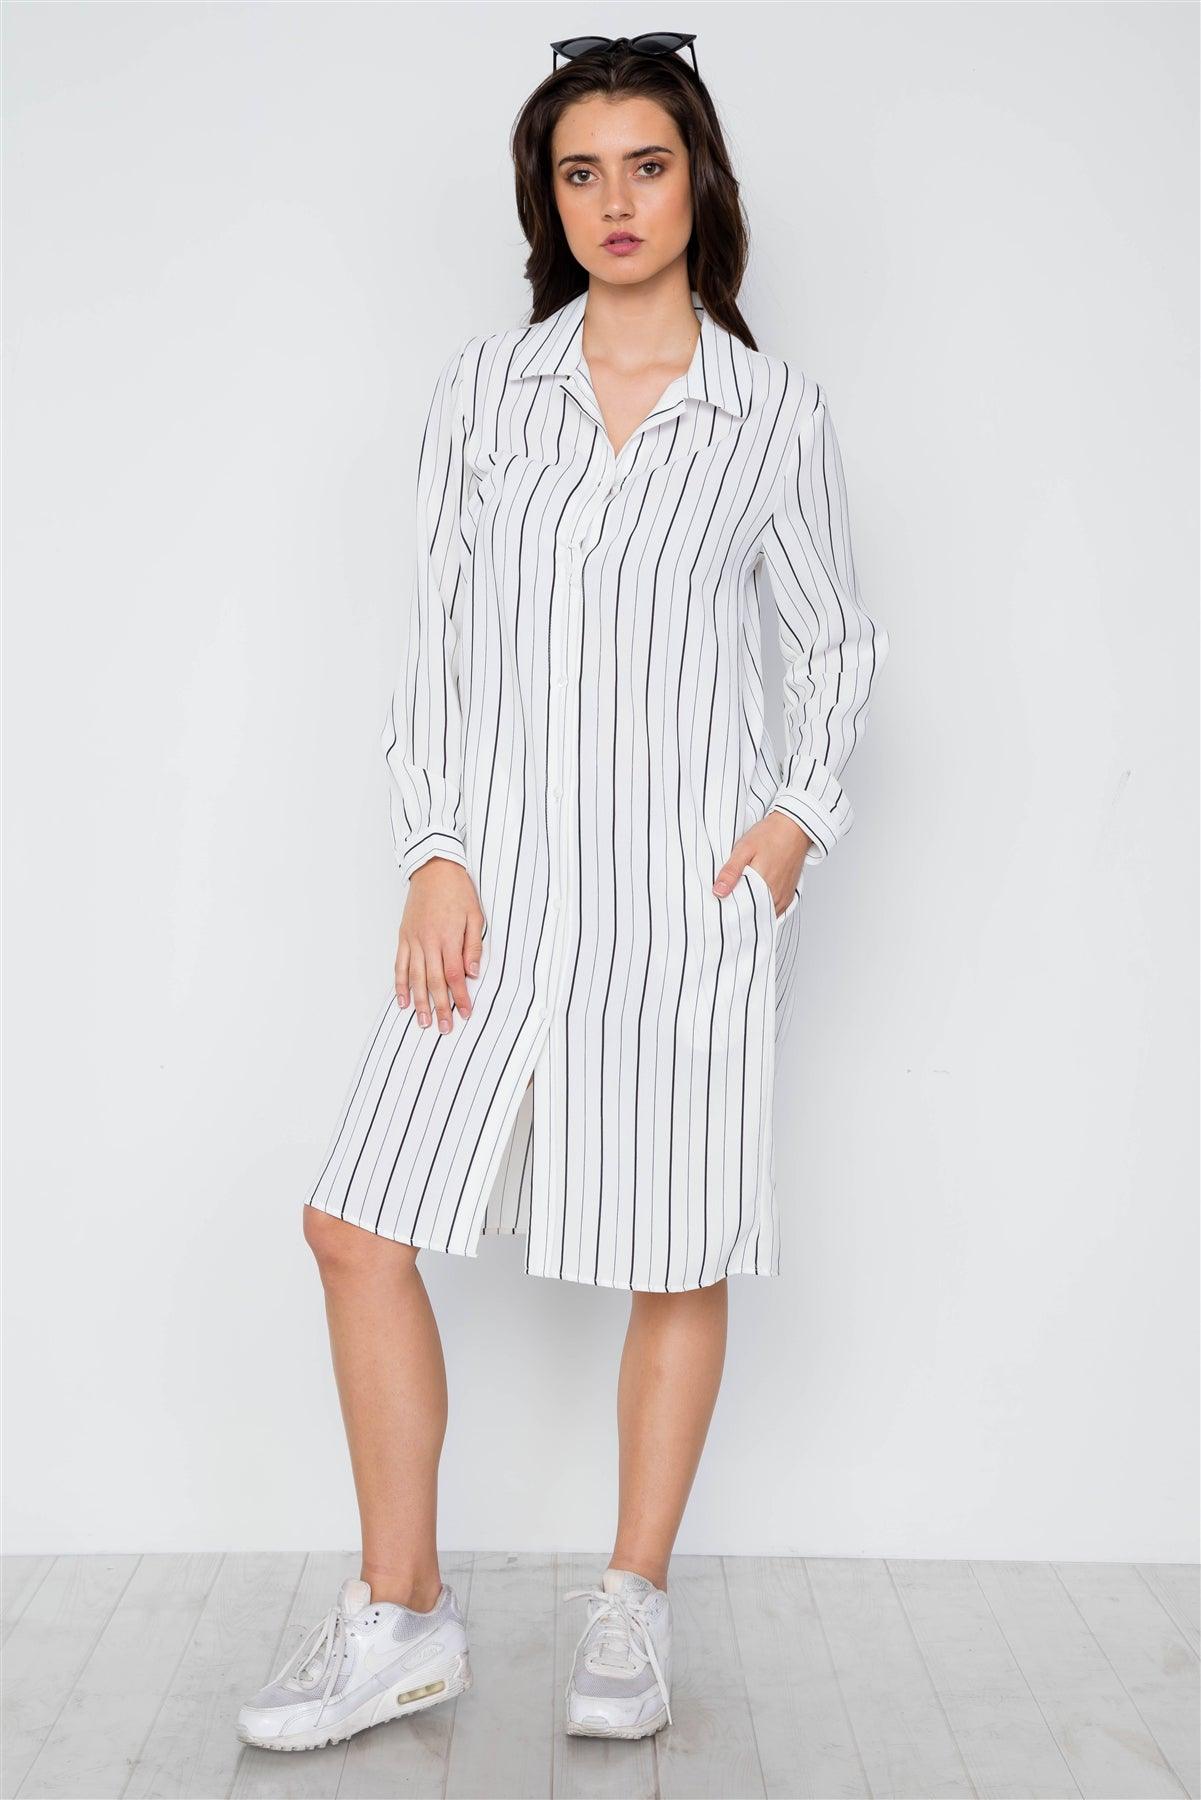 White Stripe Button Down Blouse Shirt Dress / 2-2-2